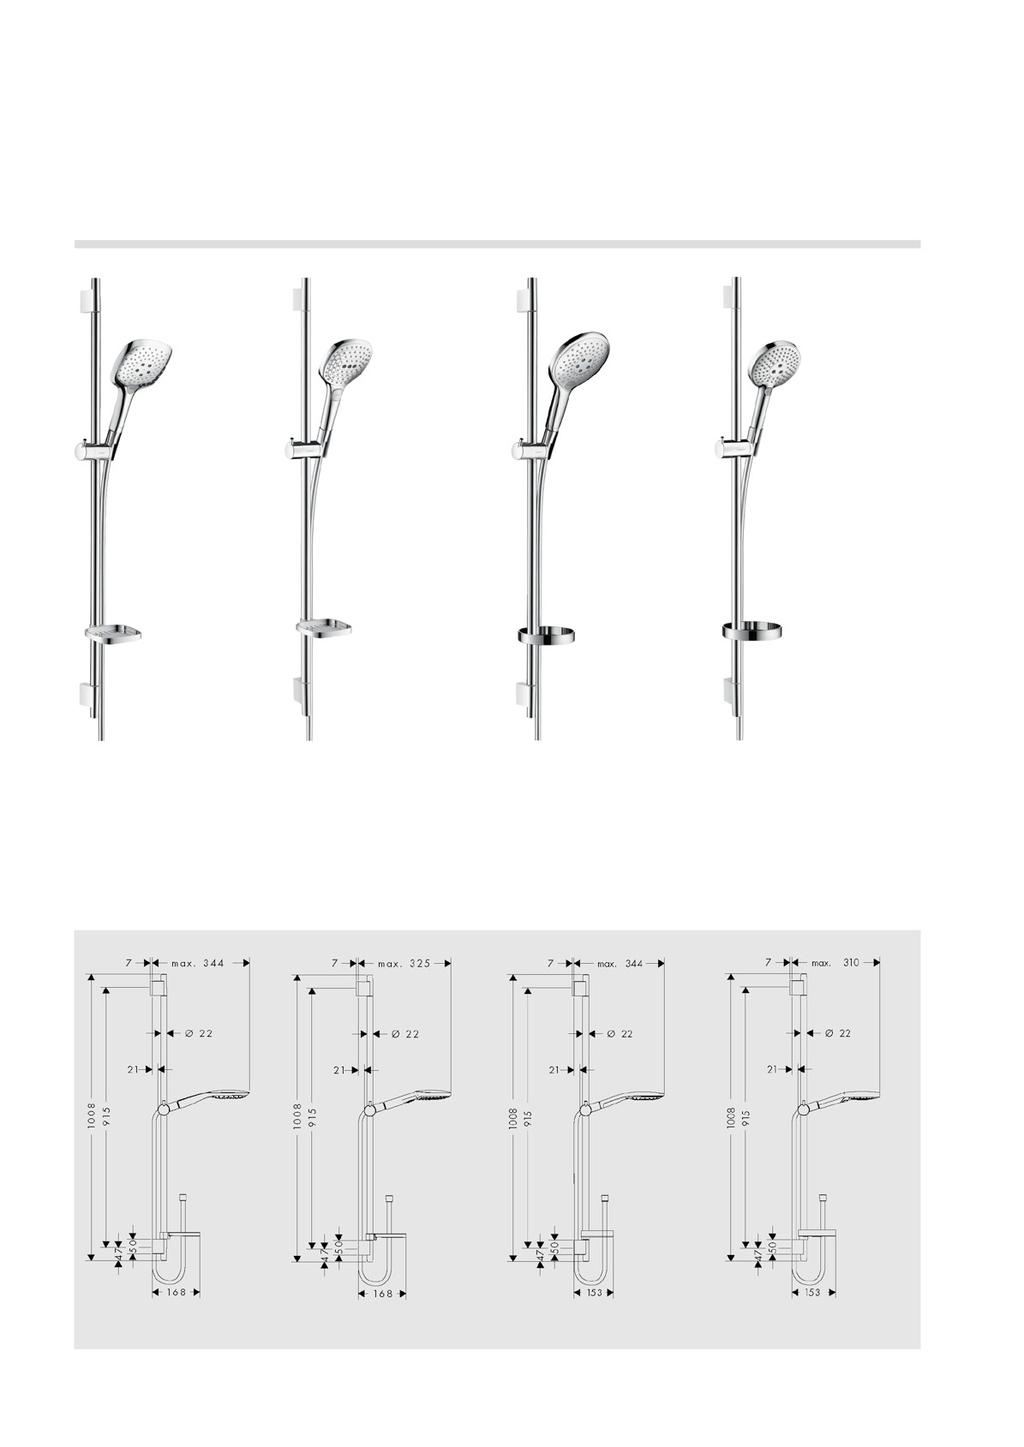 Aperçu des sets de douche Raindance Select E 150/ Unica S Puro Set 90 cm # 27857, -000, -400 65 cm # 27856, -000, -400 (non représ.